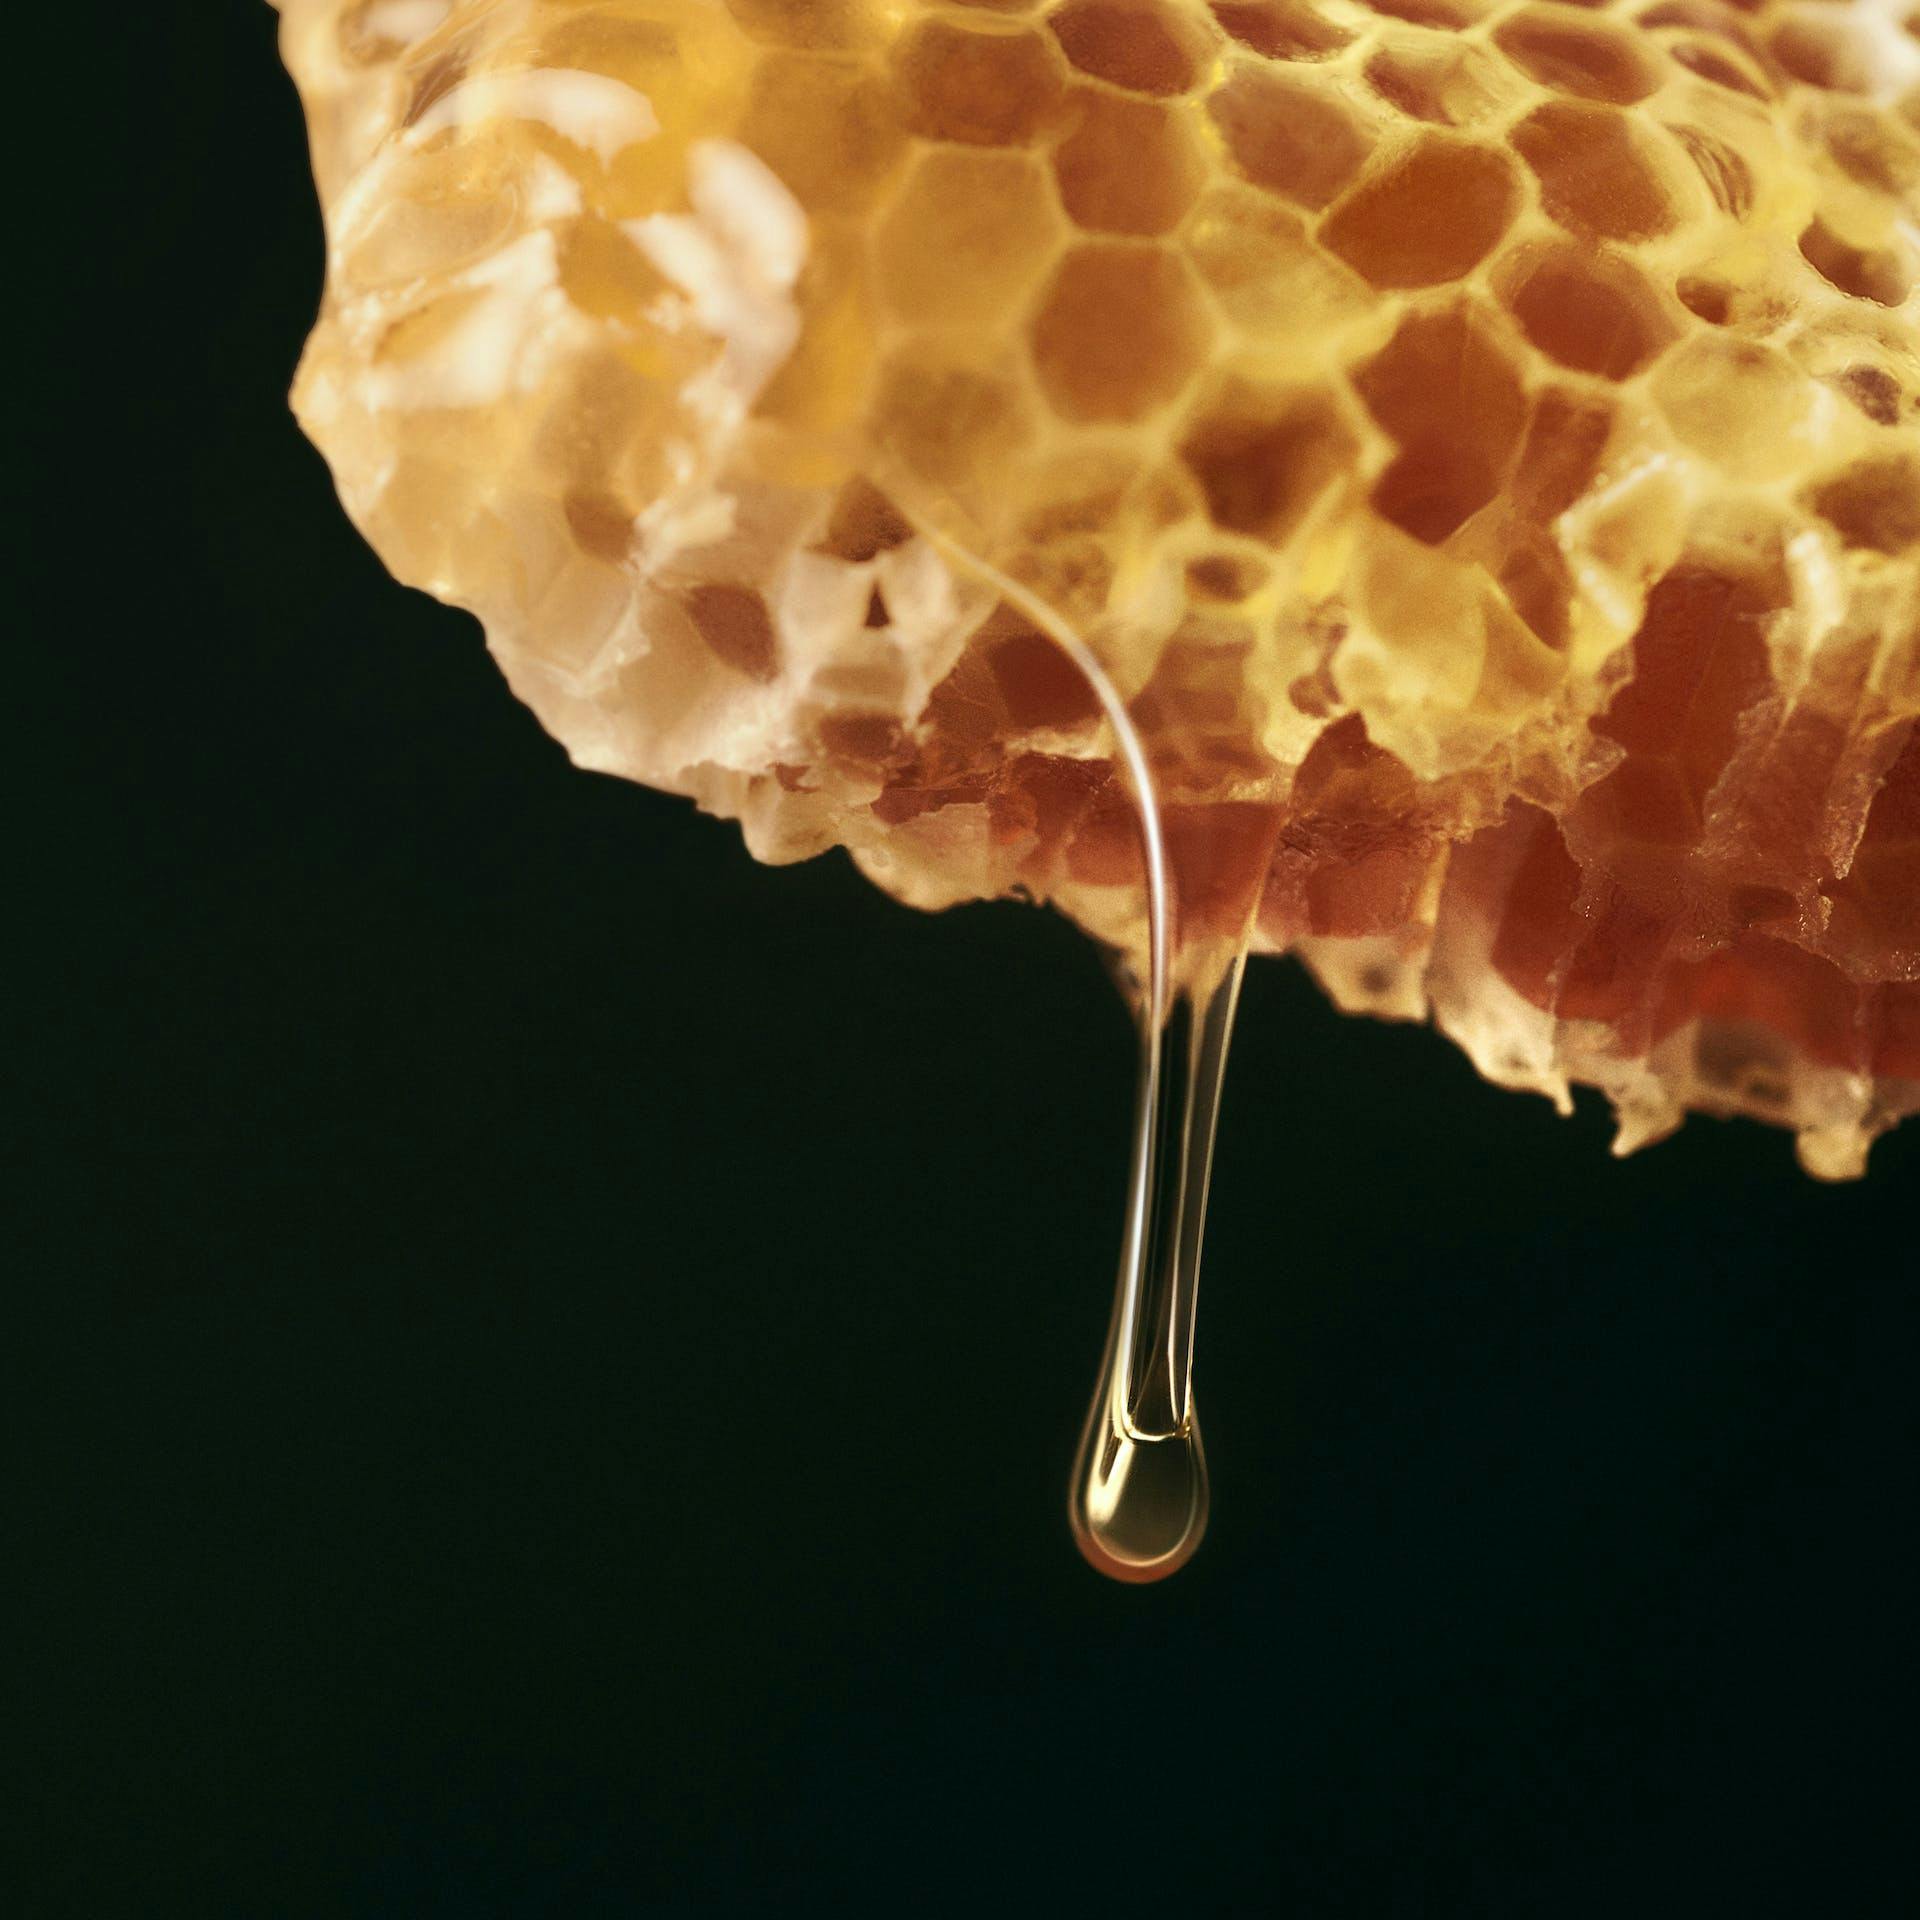 Honey drip